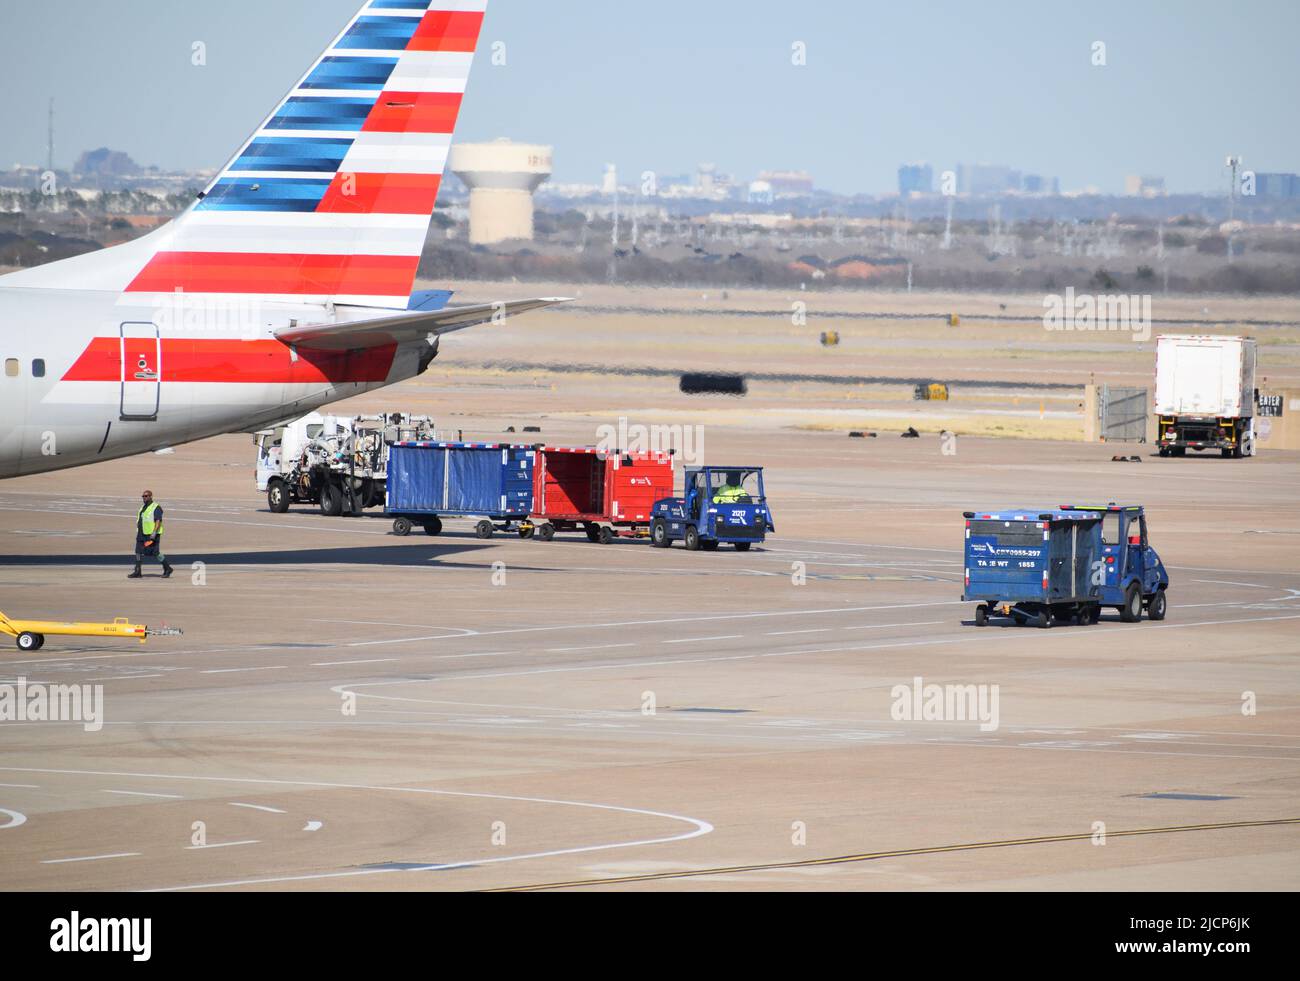 Ein Flugzeug von American Airlines, das von Ramp Service-Mitarbeitern außerhalb eines Terminals am DFW Airport (Dallas-Fort Worth Airport) bedient wird Stockfoto